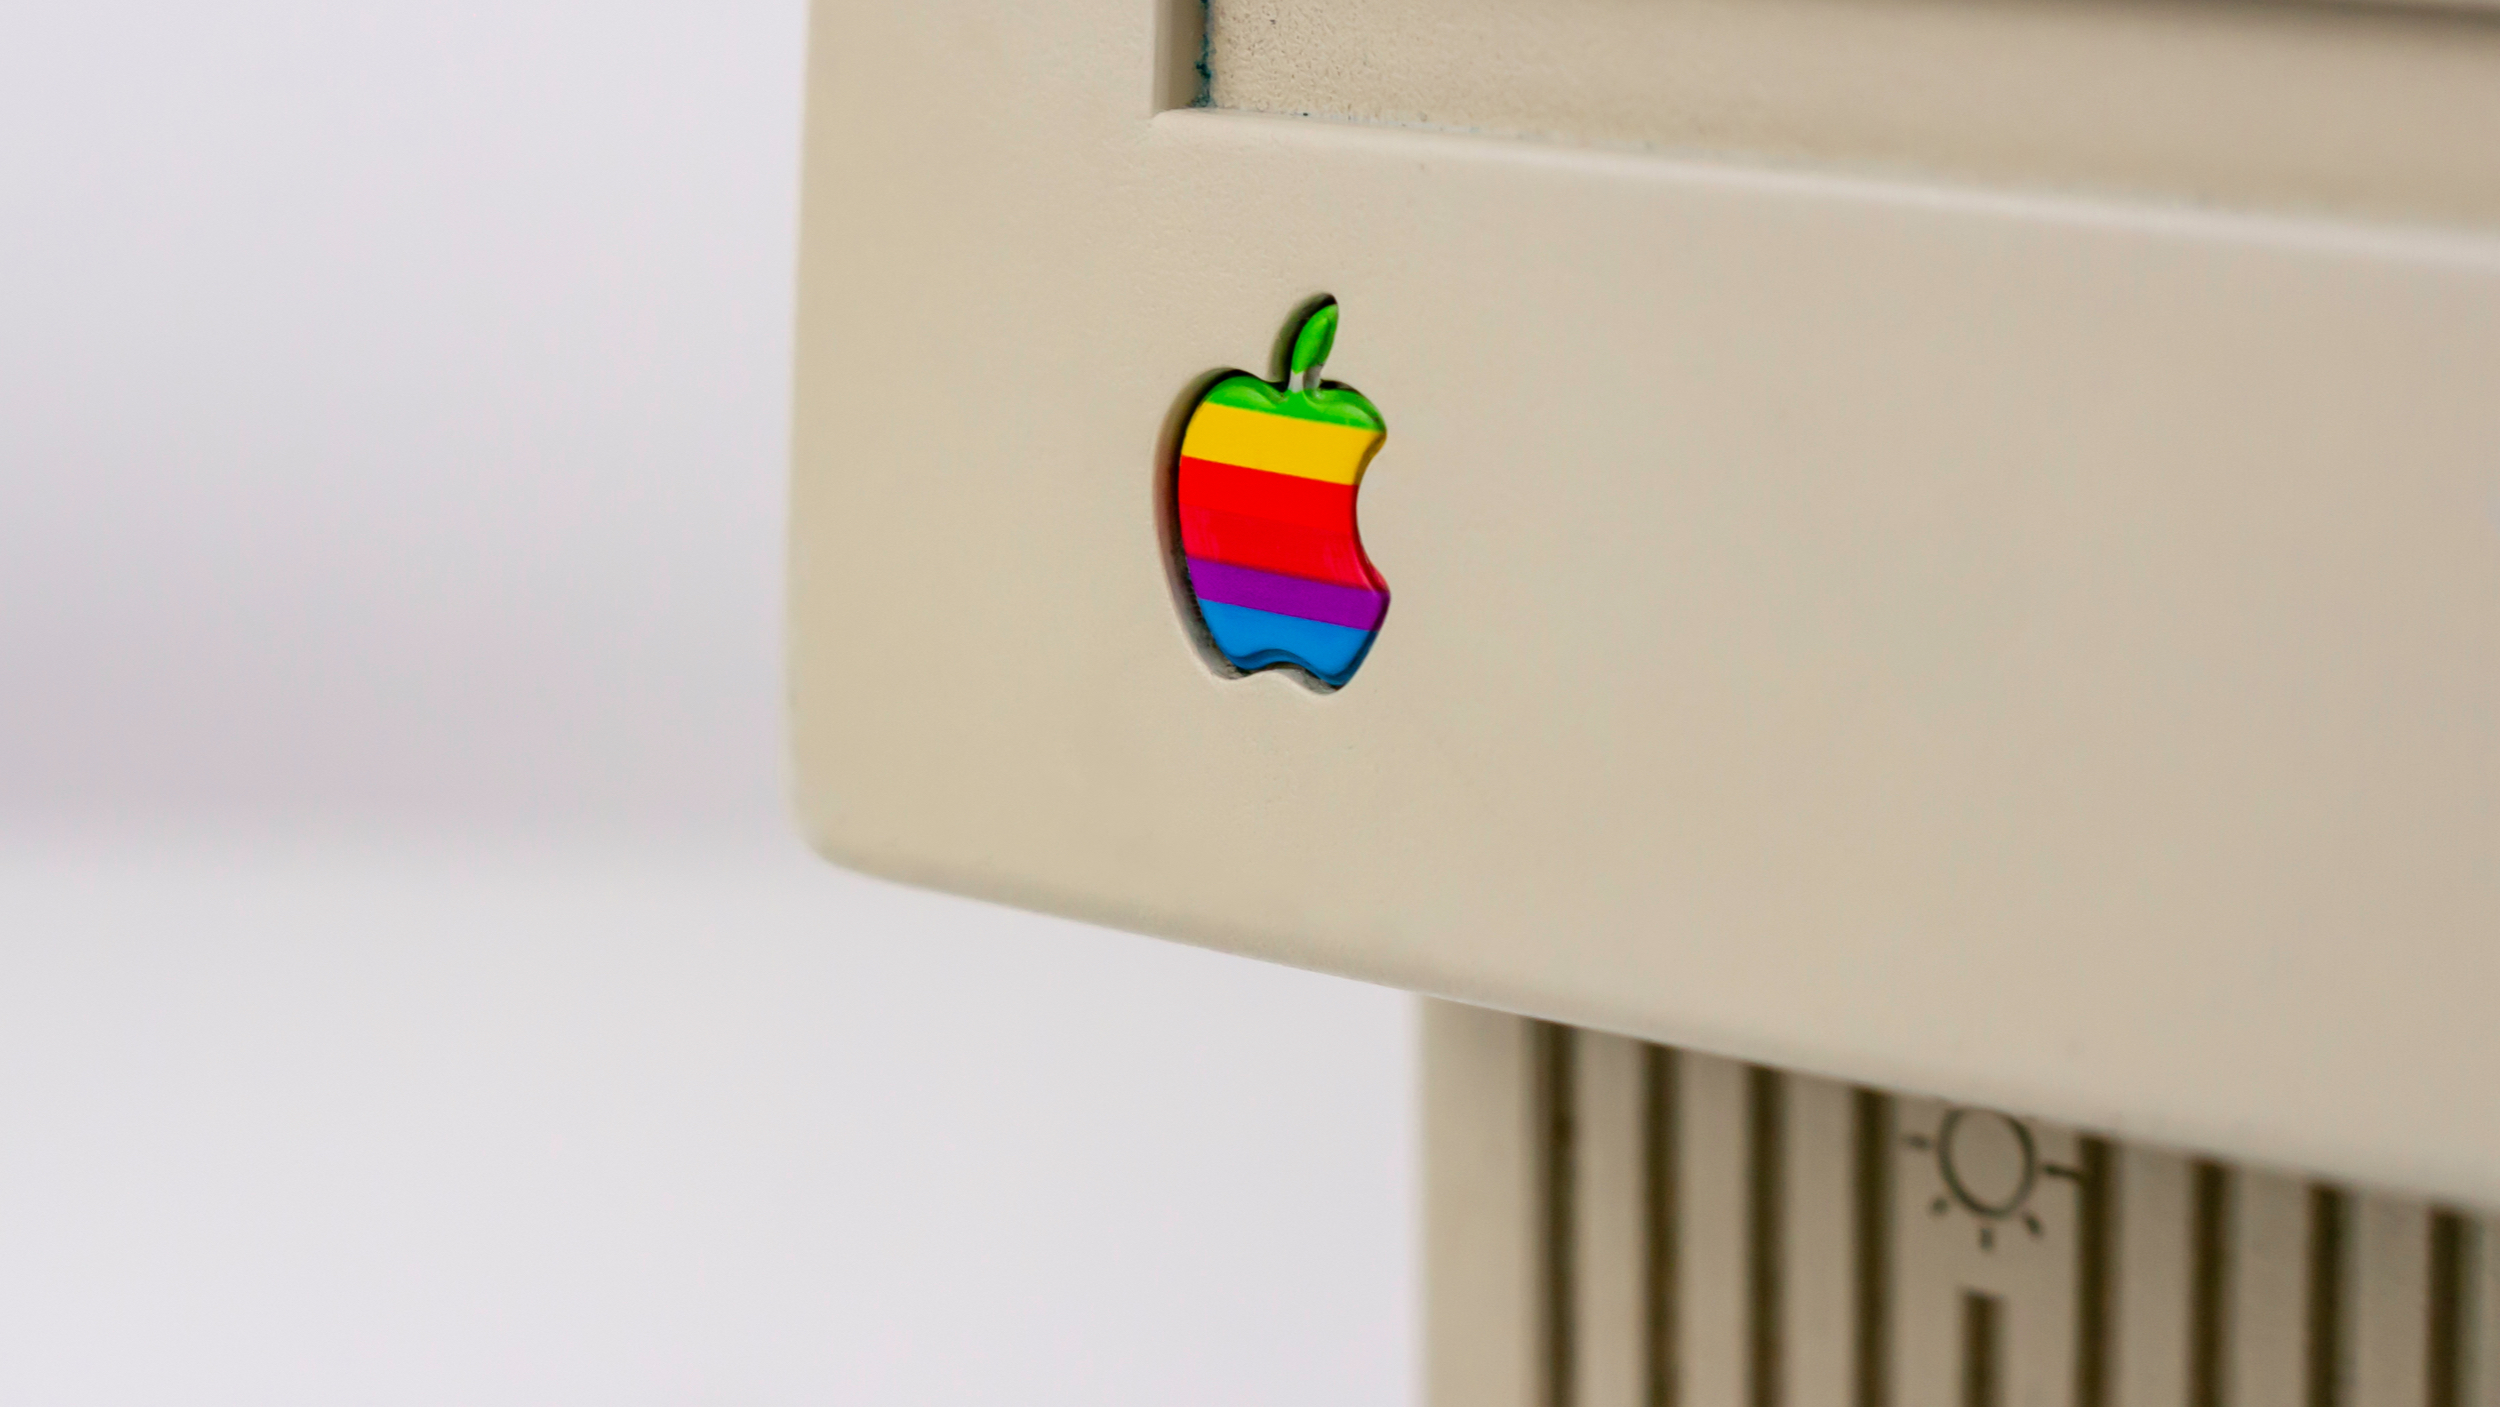 Connaissez-vous l'histoire du logo Apple ?